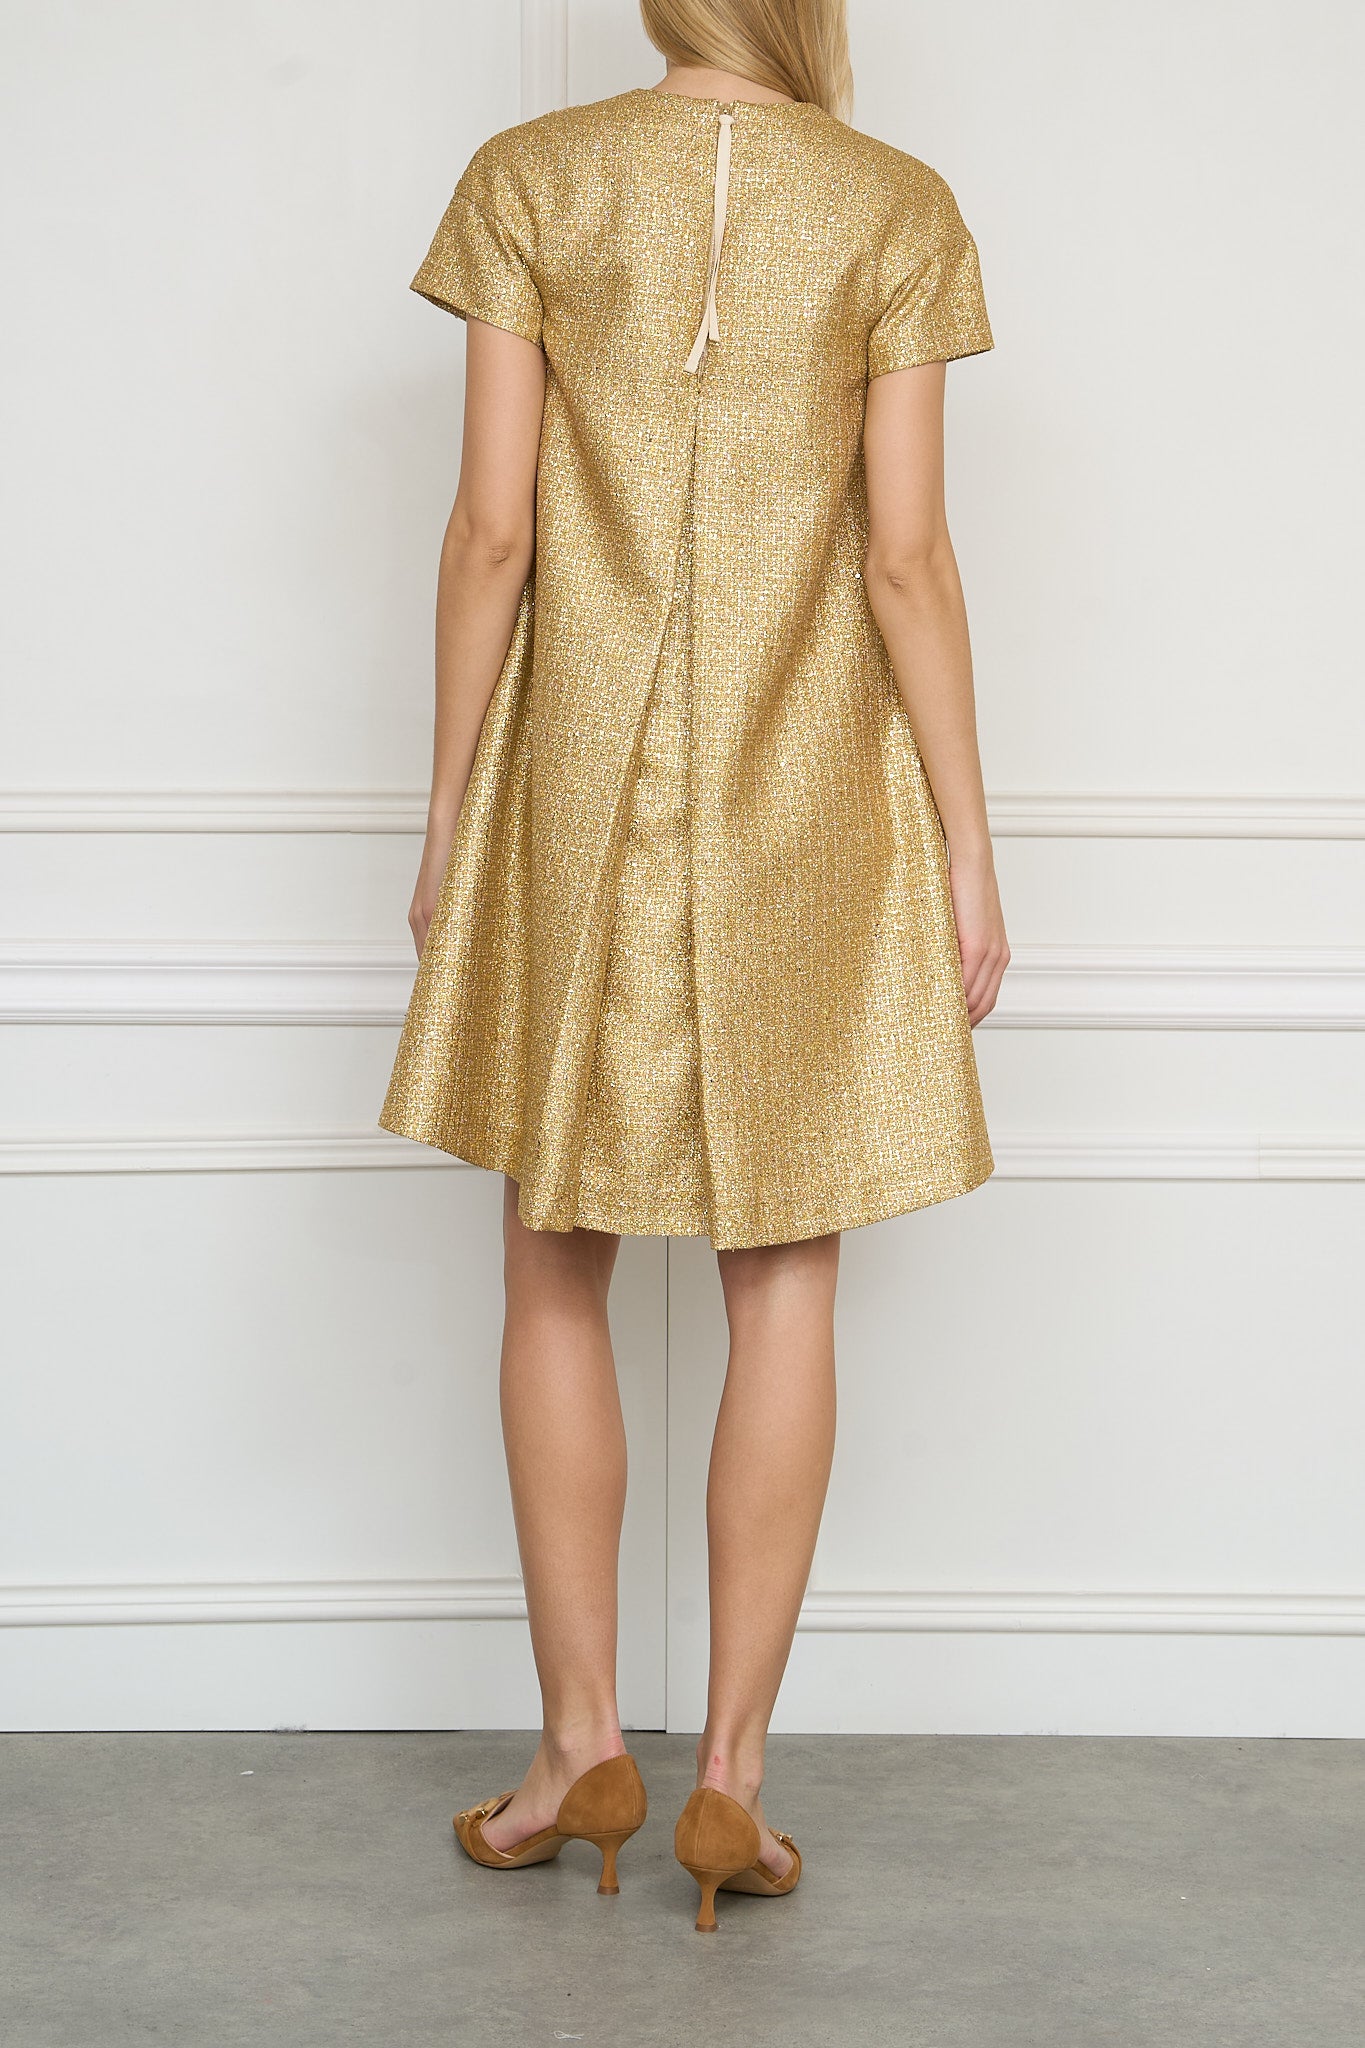 Stukturiertes Kleid in gold